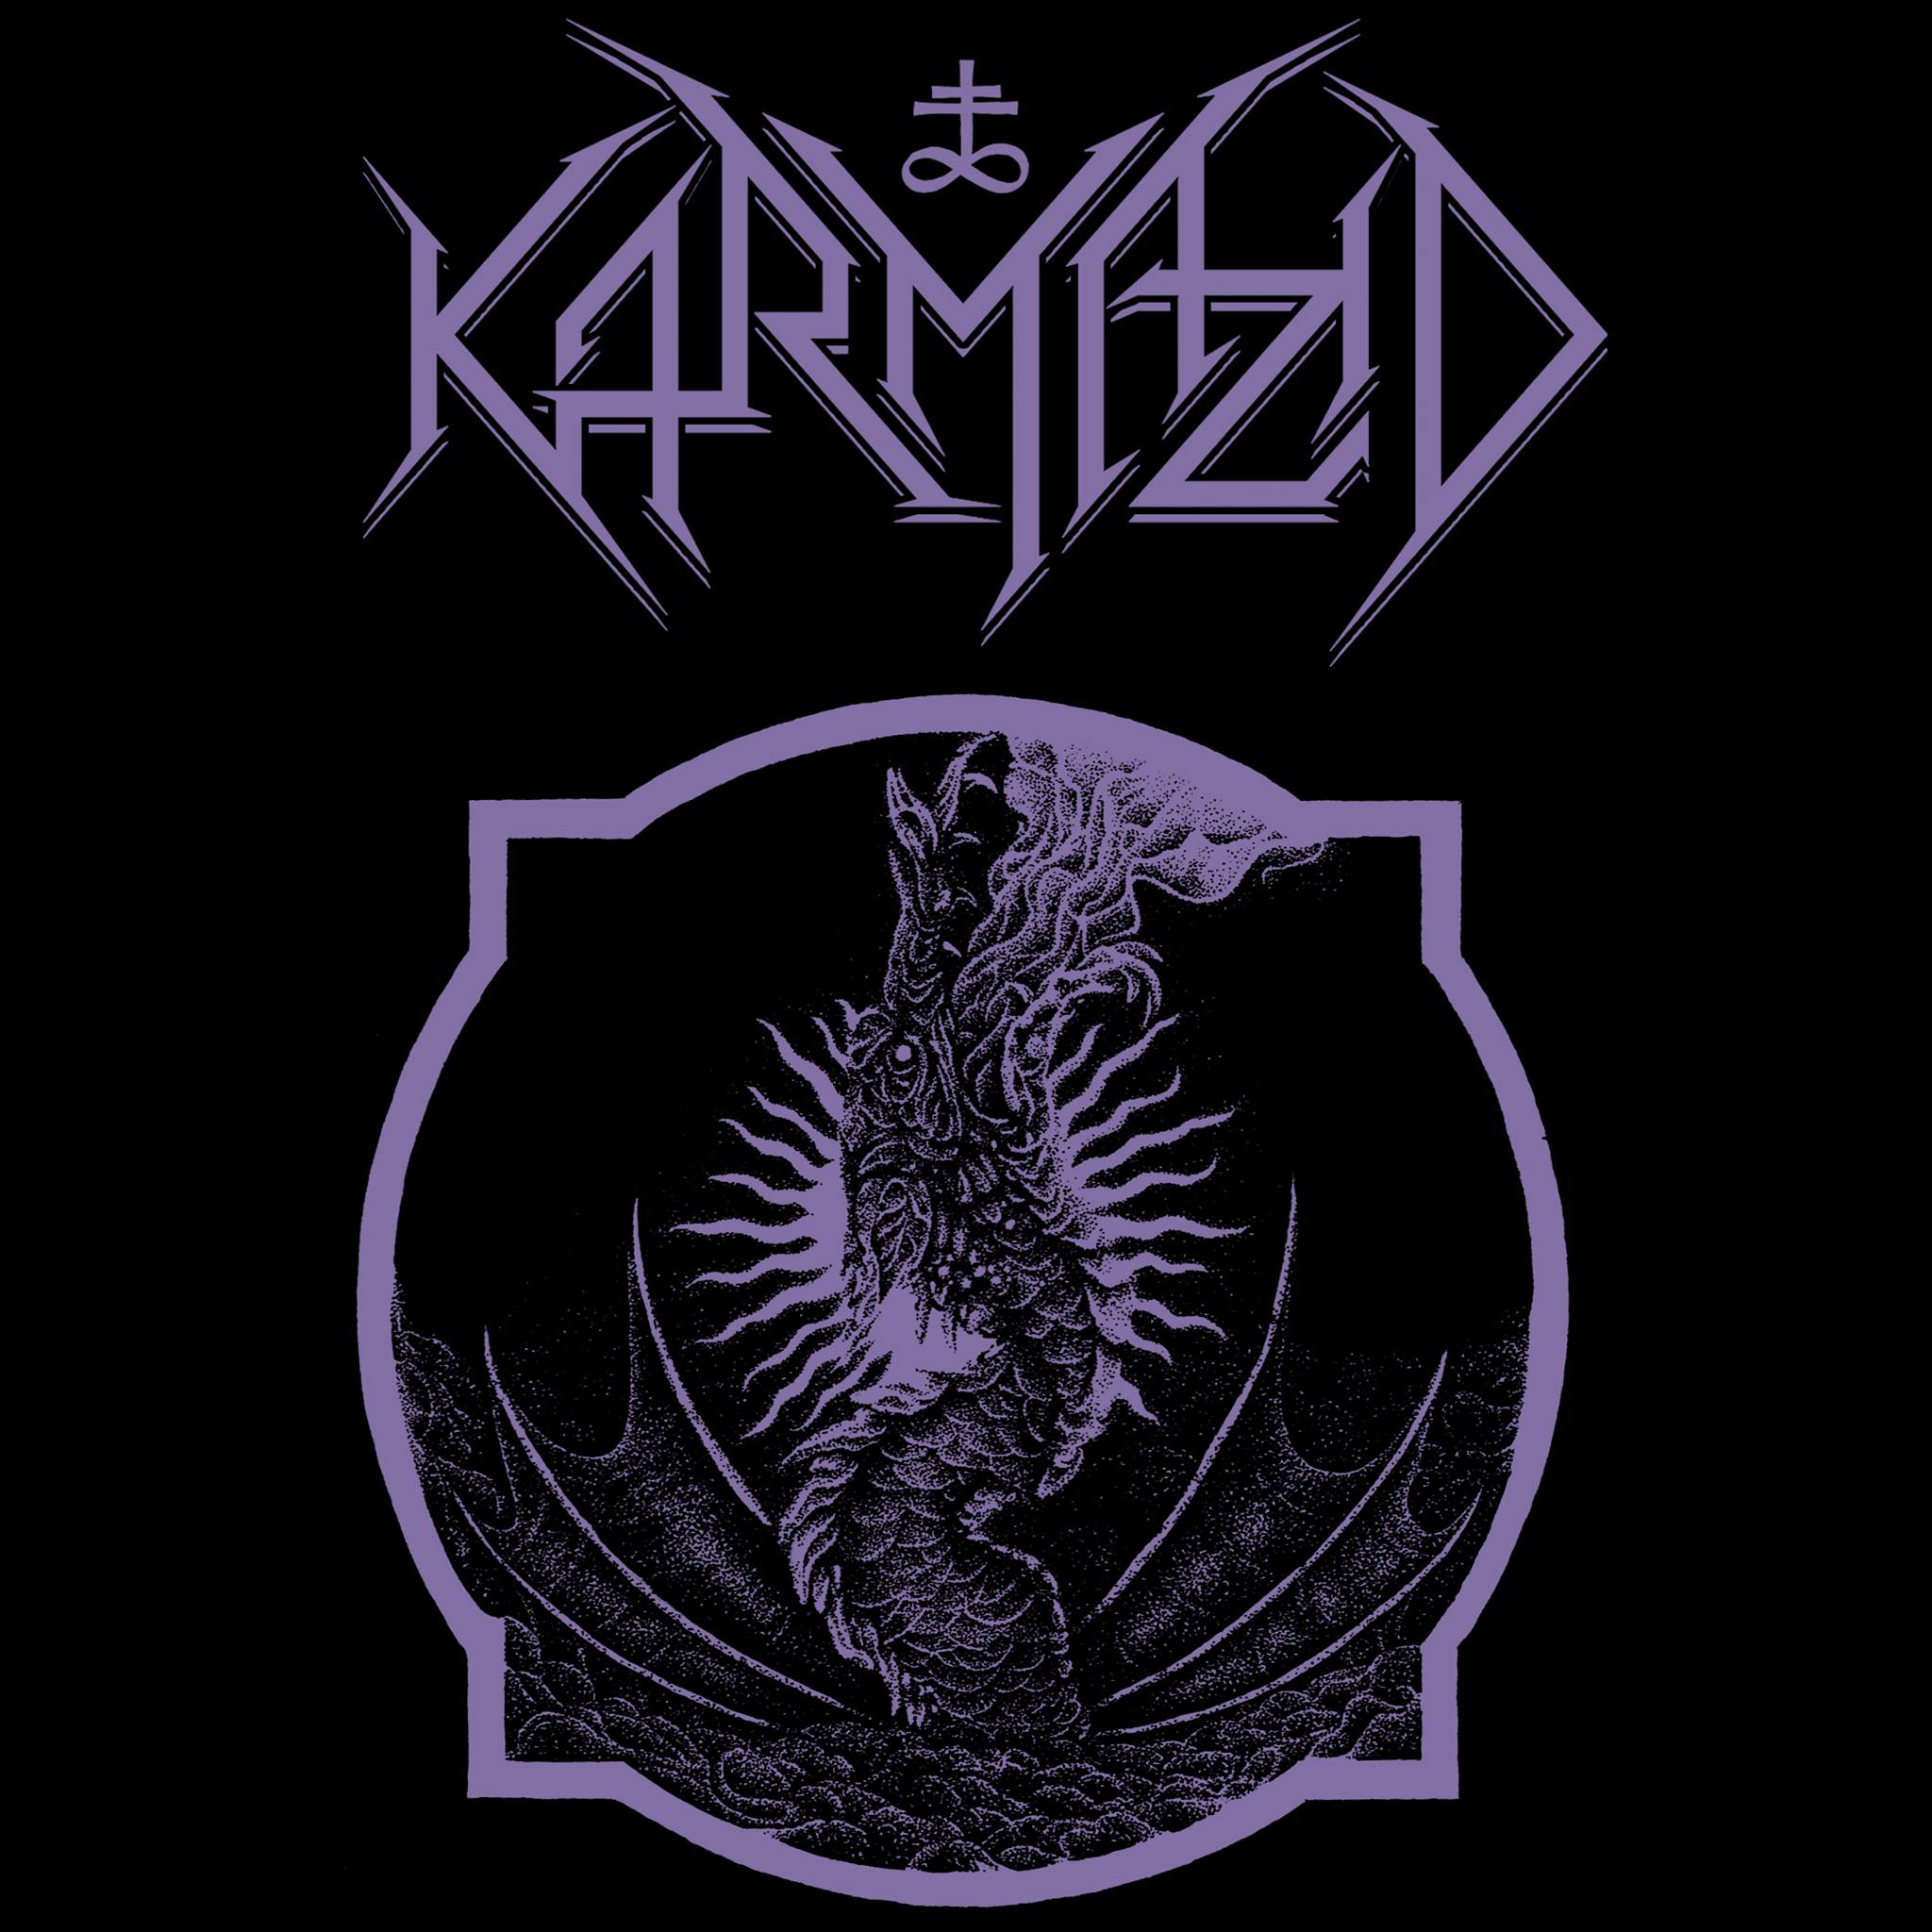 Karmazid logo